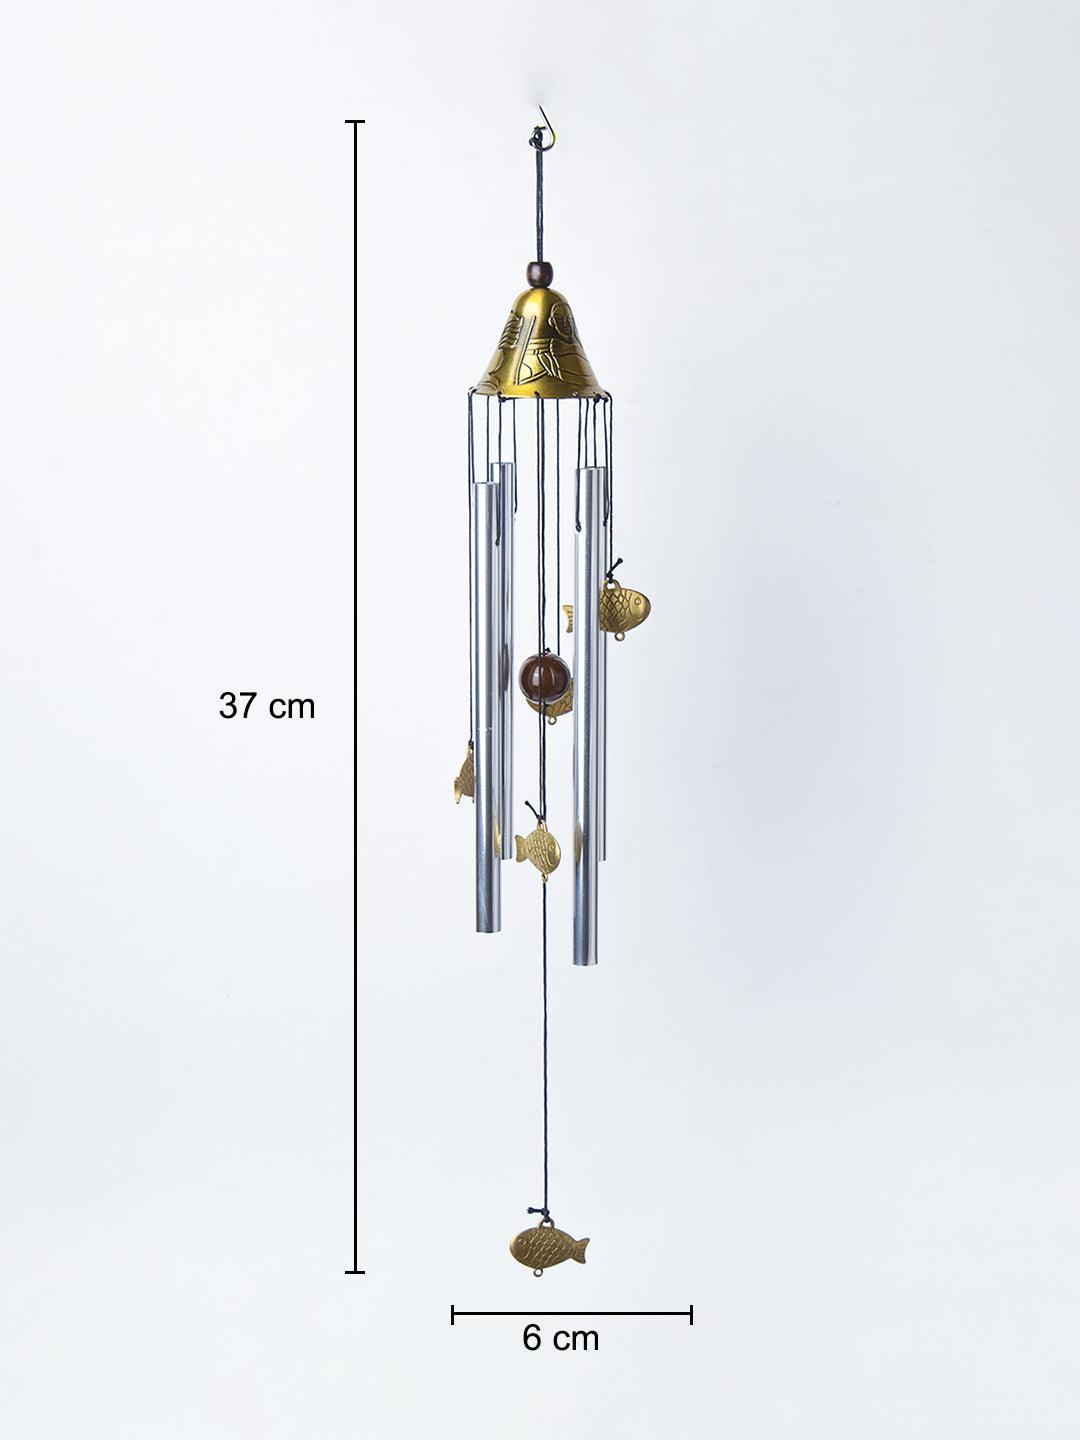 Unique Copper Decorative Wind Chime For Home - 7 X 7 X 53.5 Cm - 6